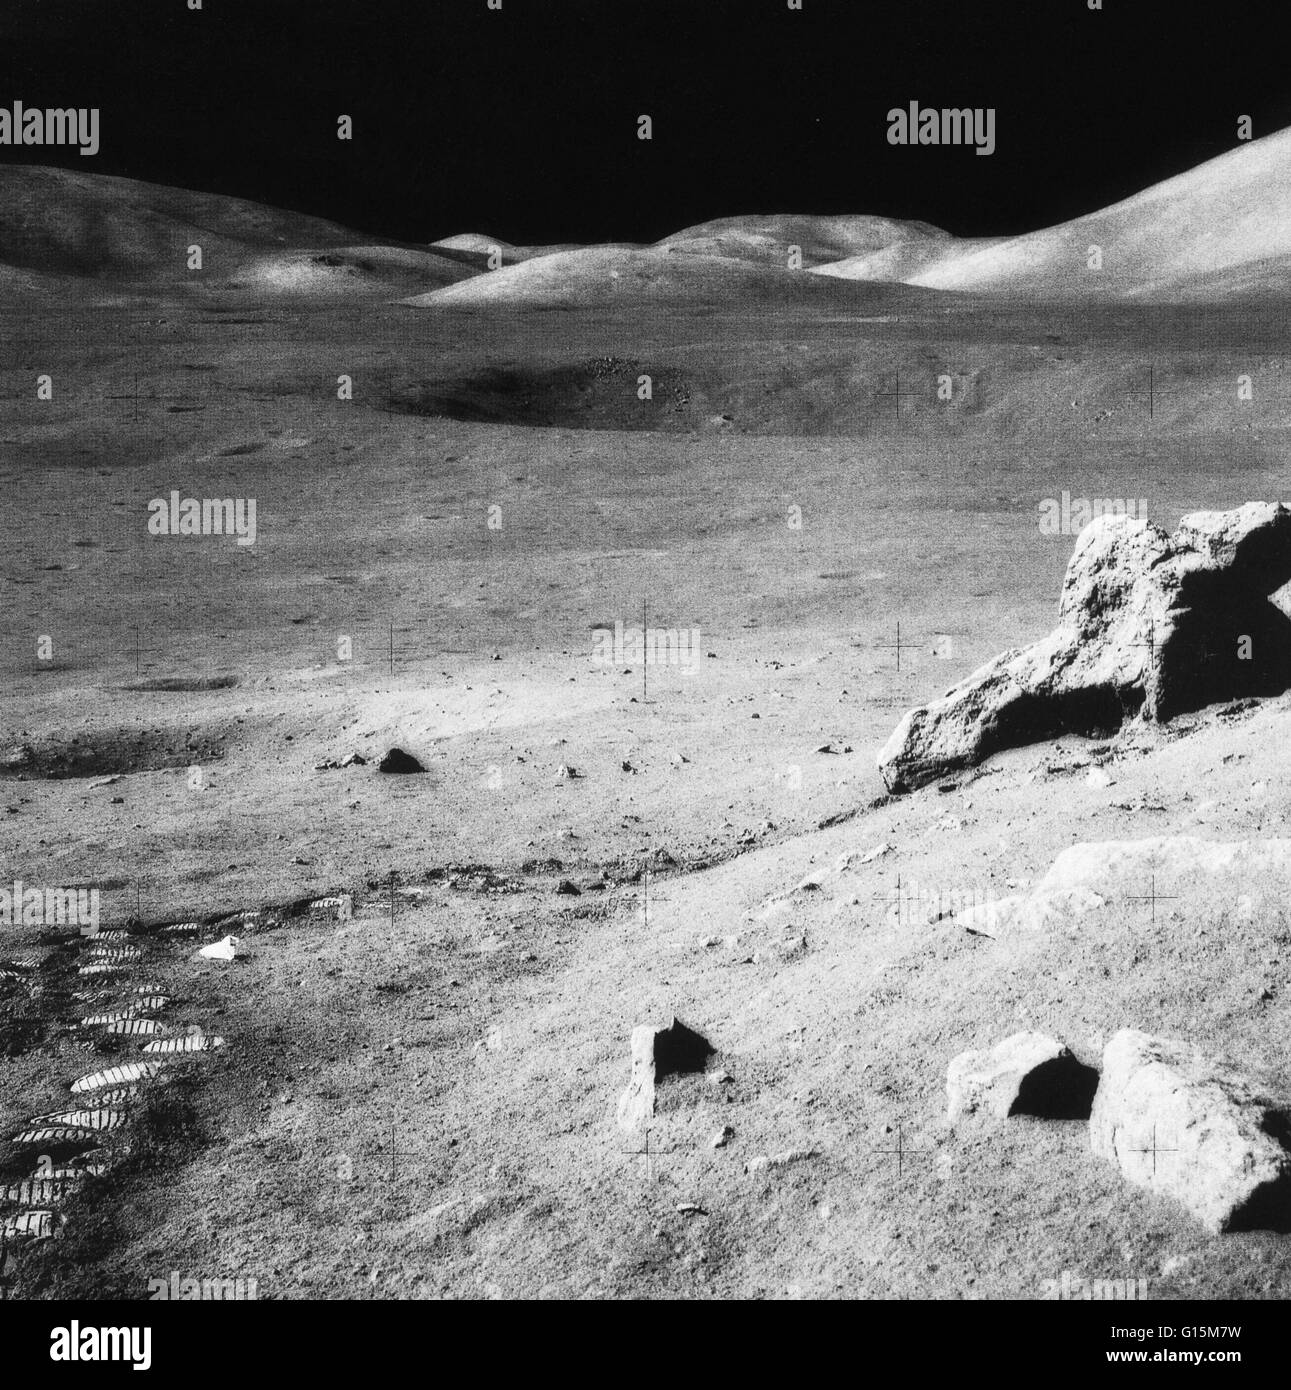 Mondlandschaft. Das Tal der Taurus-Littrow und das Nord-massiv (oben rechts) auf dem Mond. Dies war das letzte Foto auf der Oberfläche des Mondes, nach der Apollo 17-Mission von 1972 (7-19 Dezember). Grundrisse und eine ausrangierte Rock collectio Stockfoto